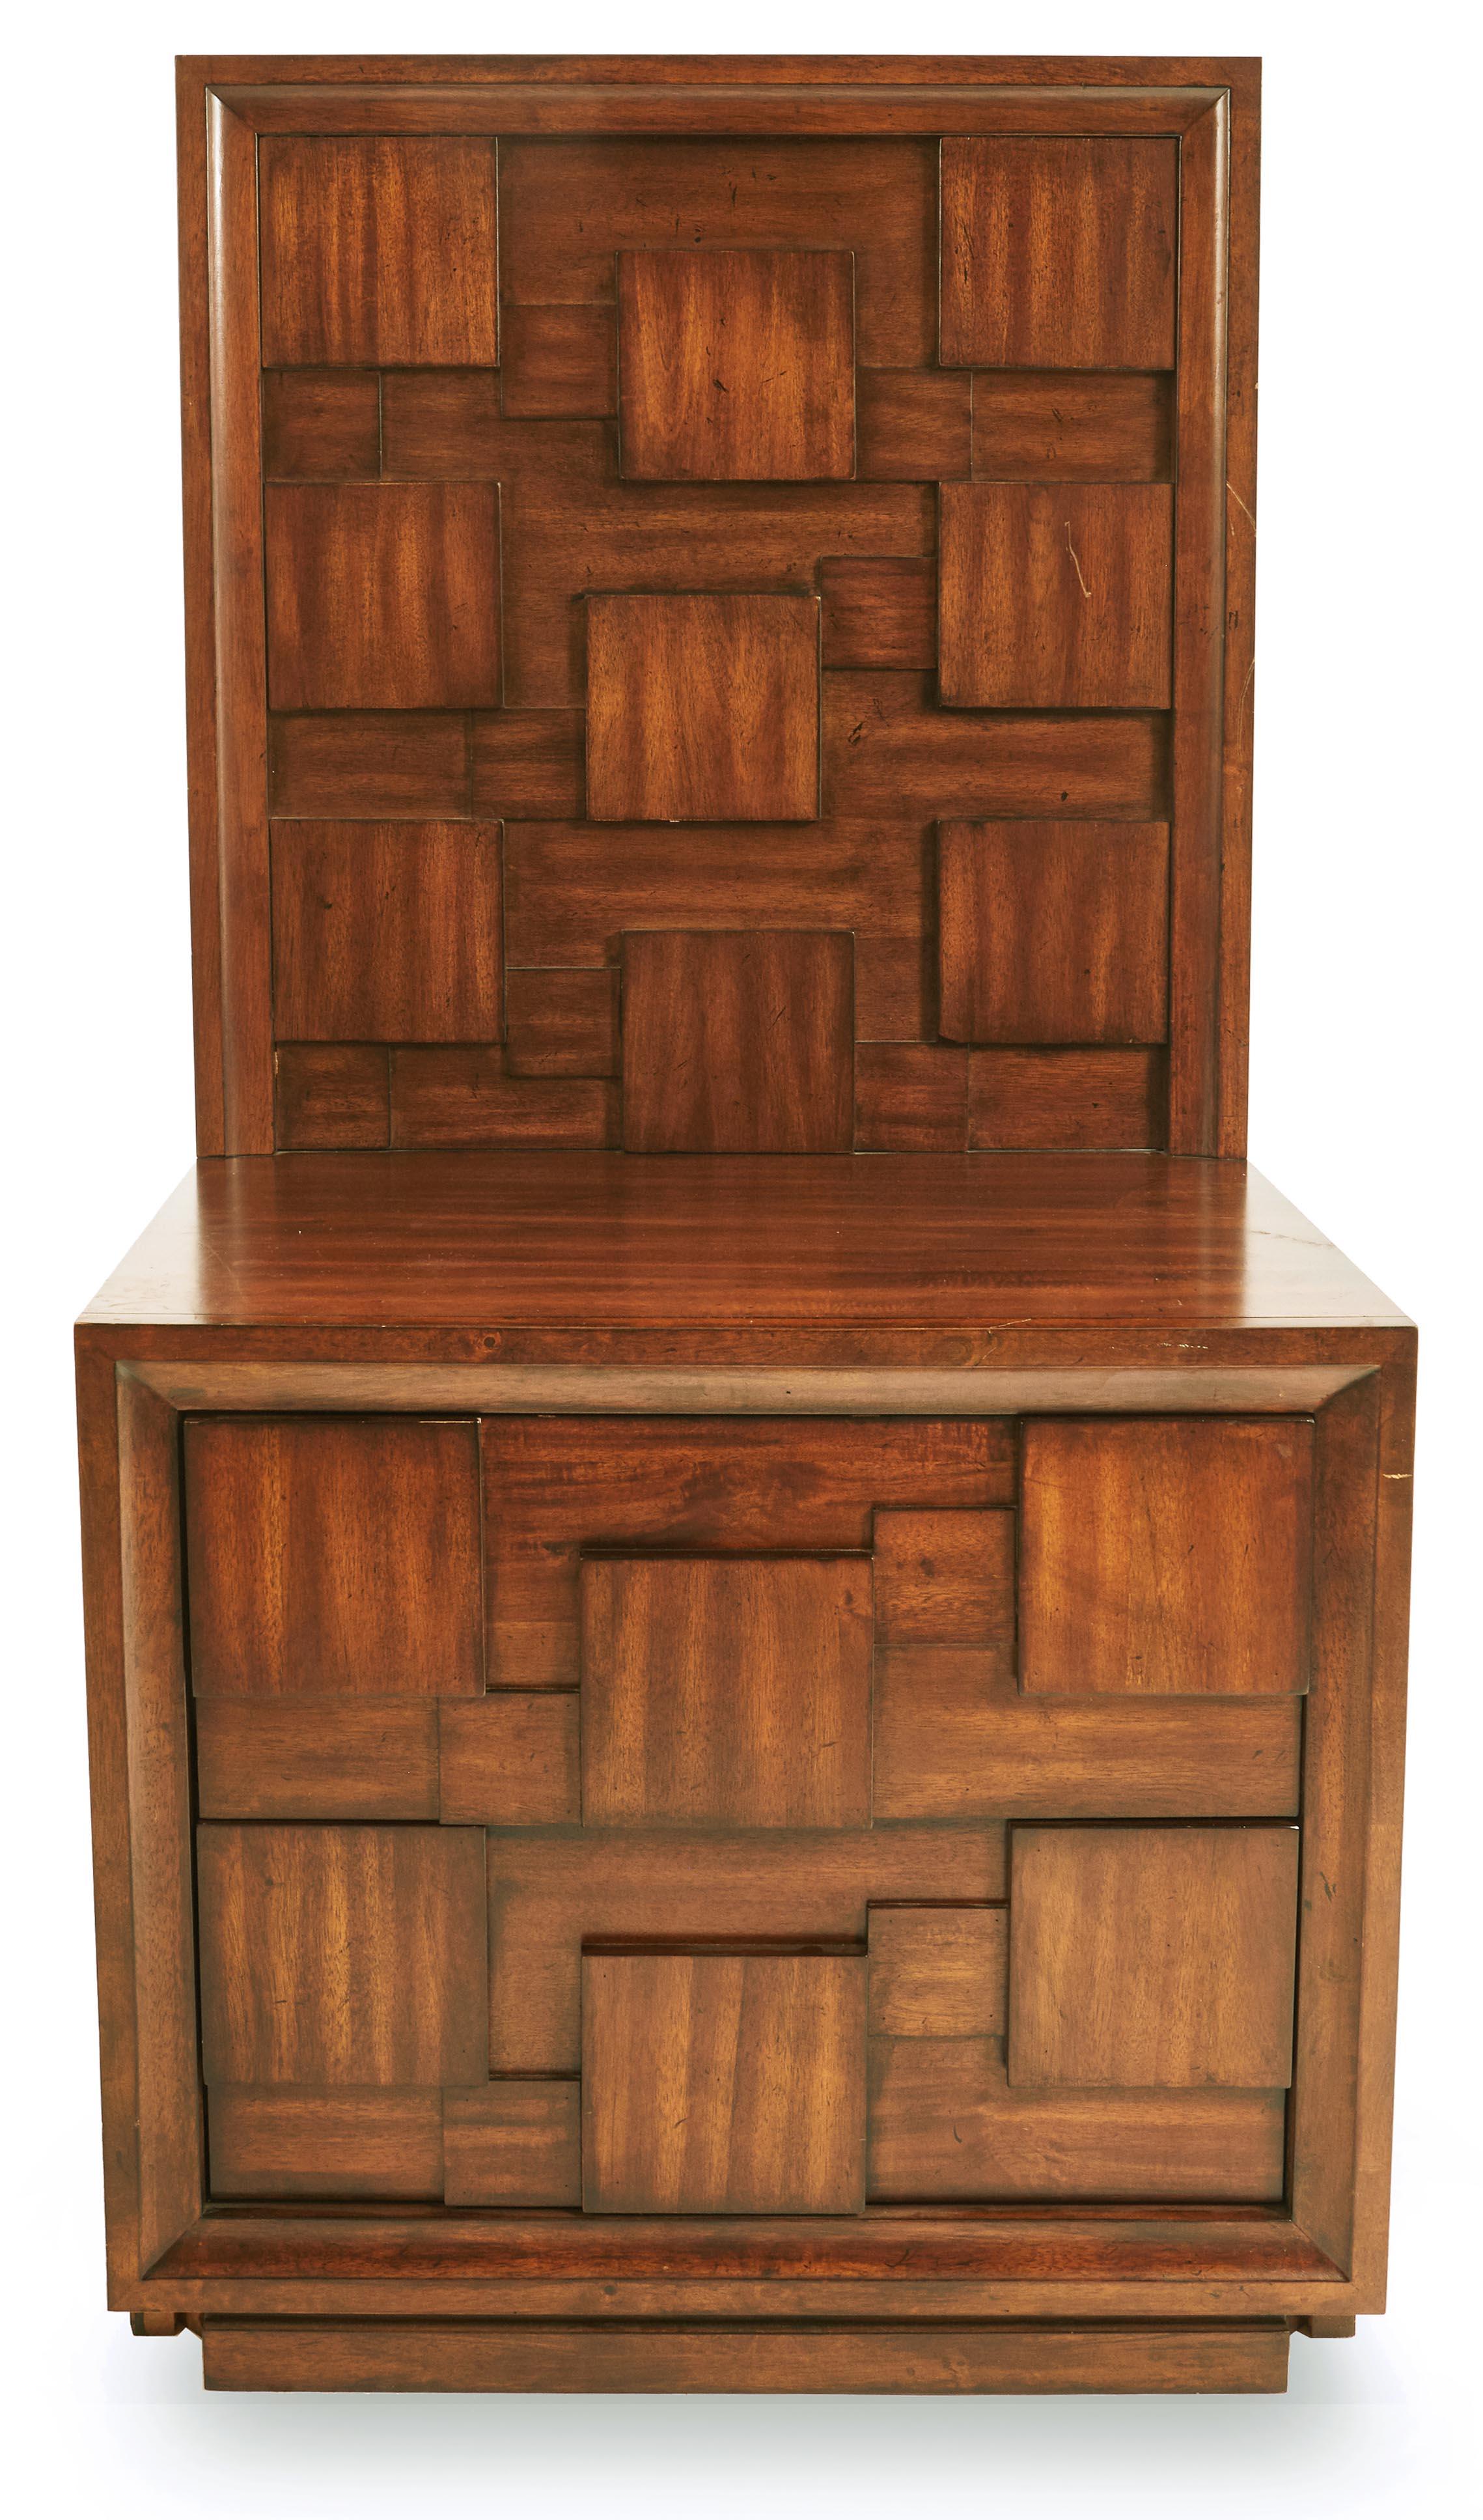 Paire de tables de chevet brutalistes en acajou avec deux tiroirs et des panneaux à haut dossier avec un dessin géométrique en relief de carrés (prix par paire).